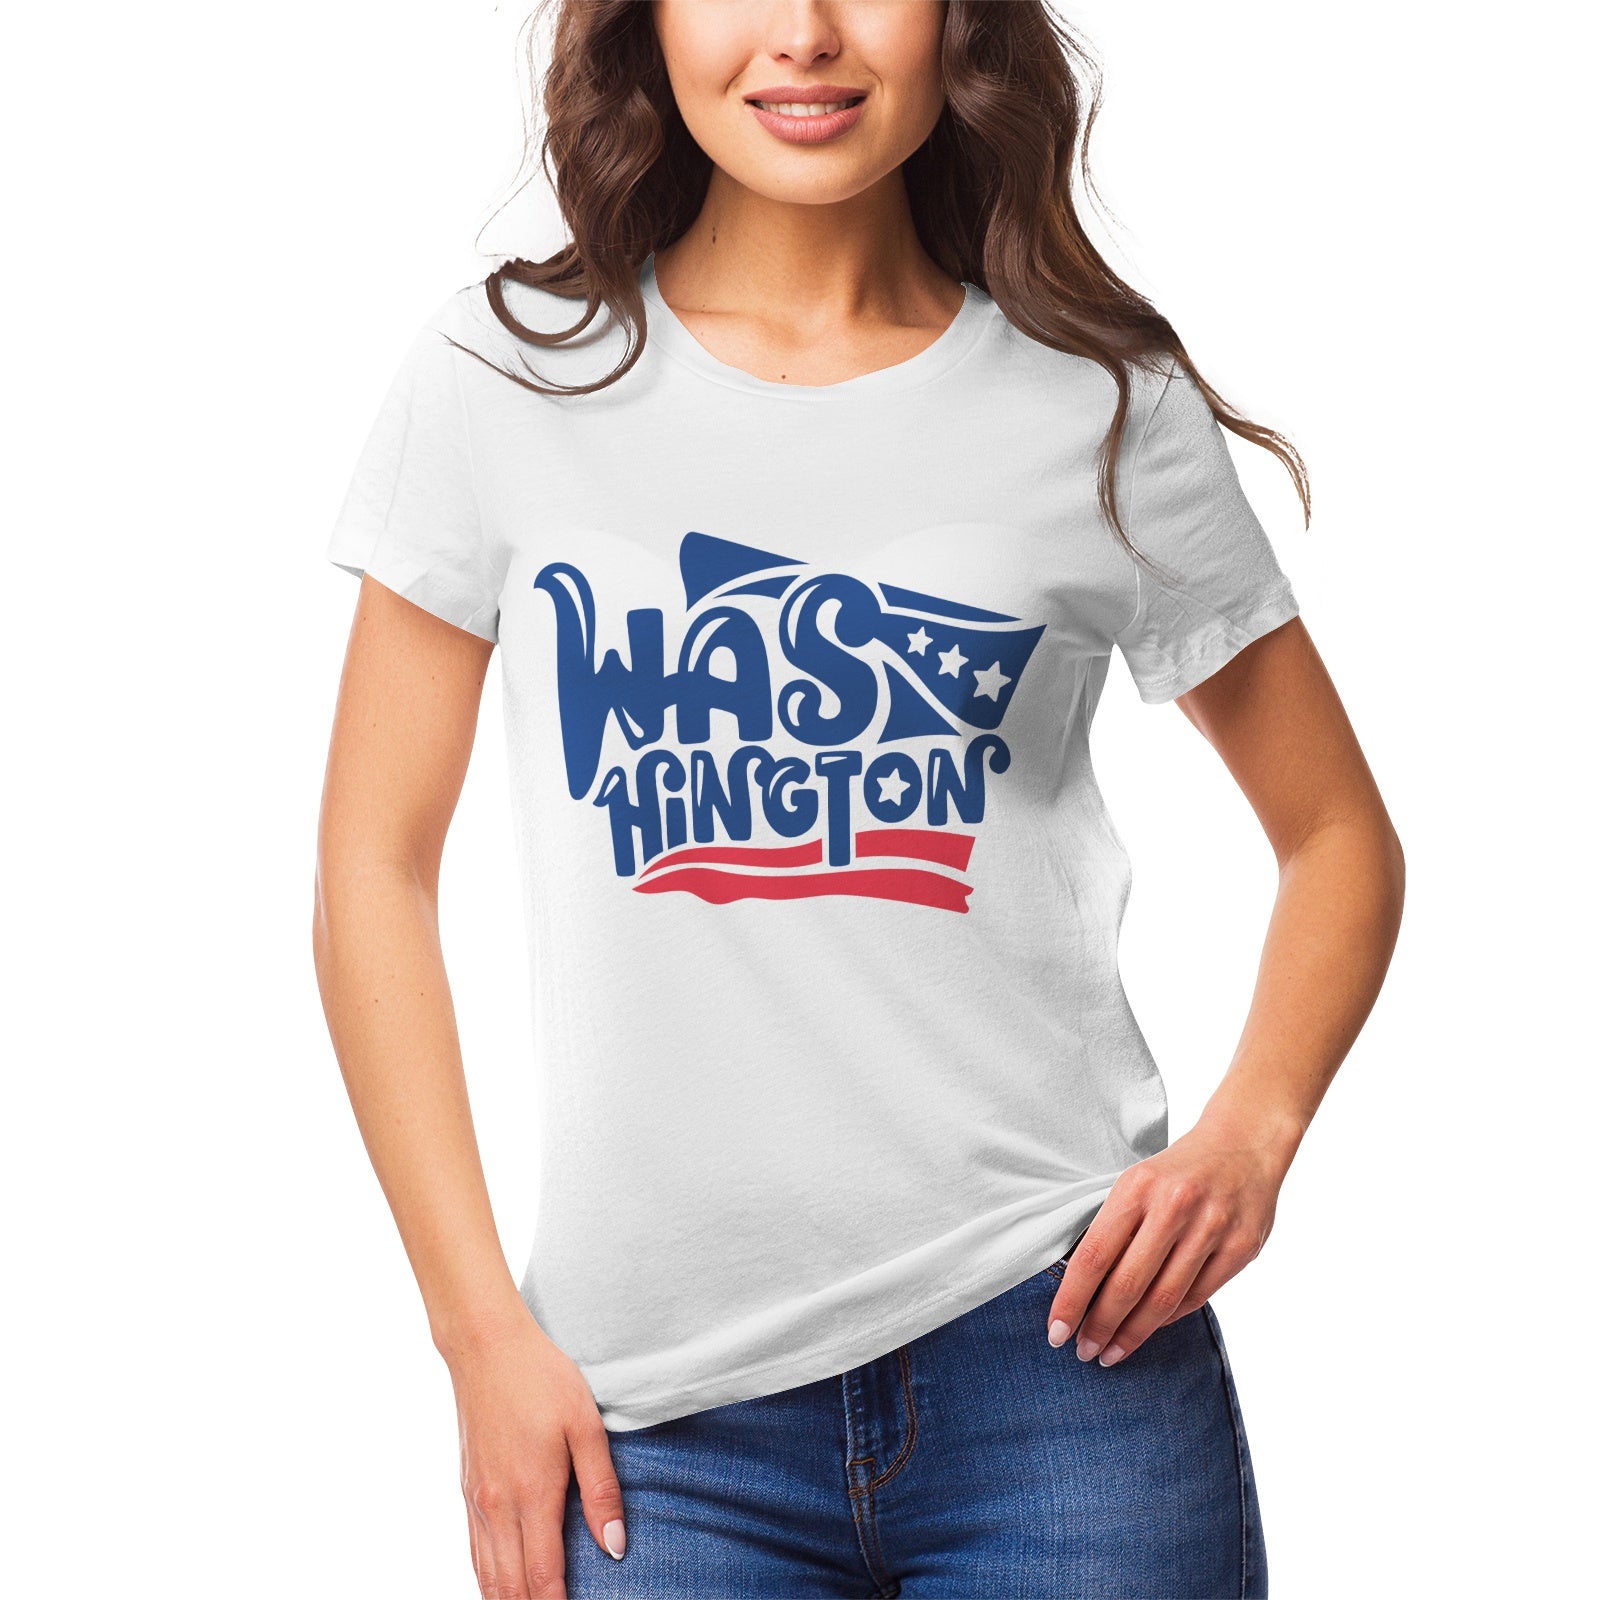 Fantasy 5 Women's Ultrasoft Pima Cotton T‑shirt - DromedarShop.com Online Boutique